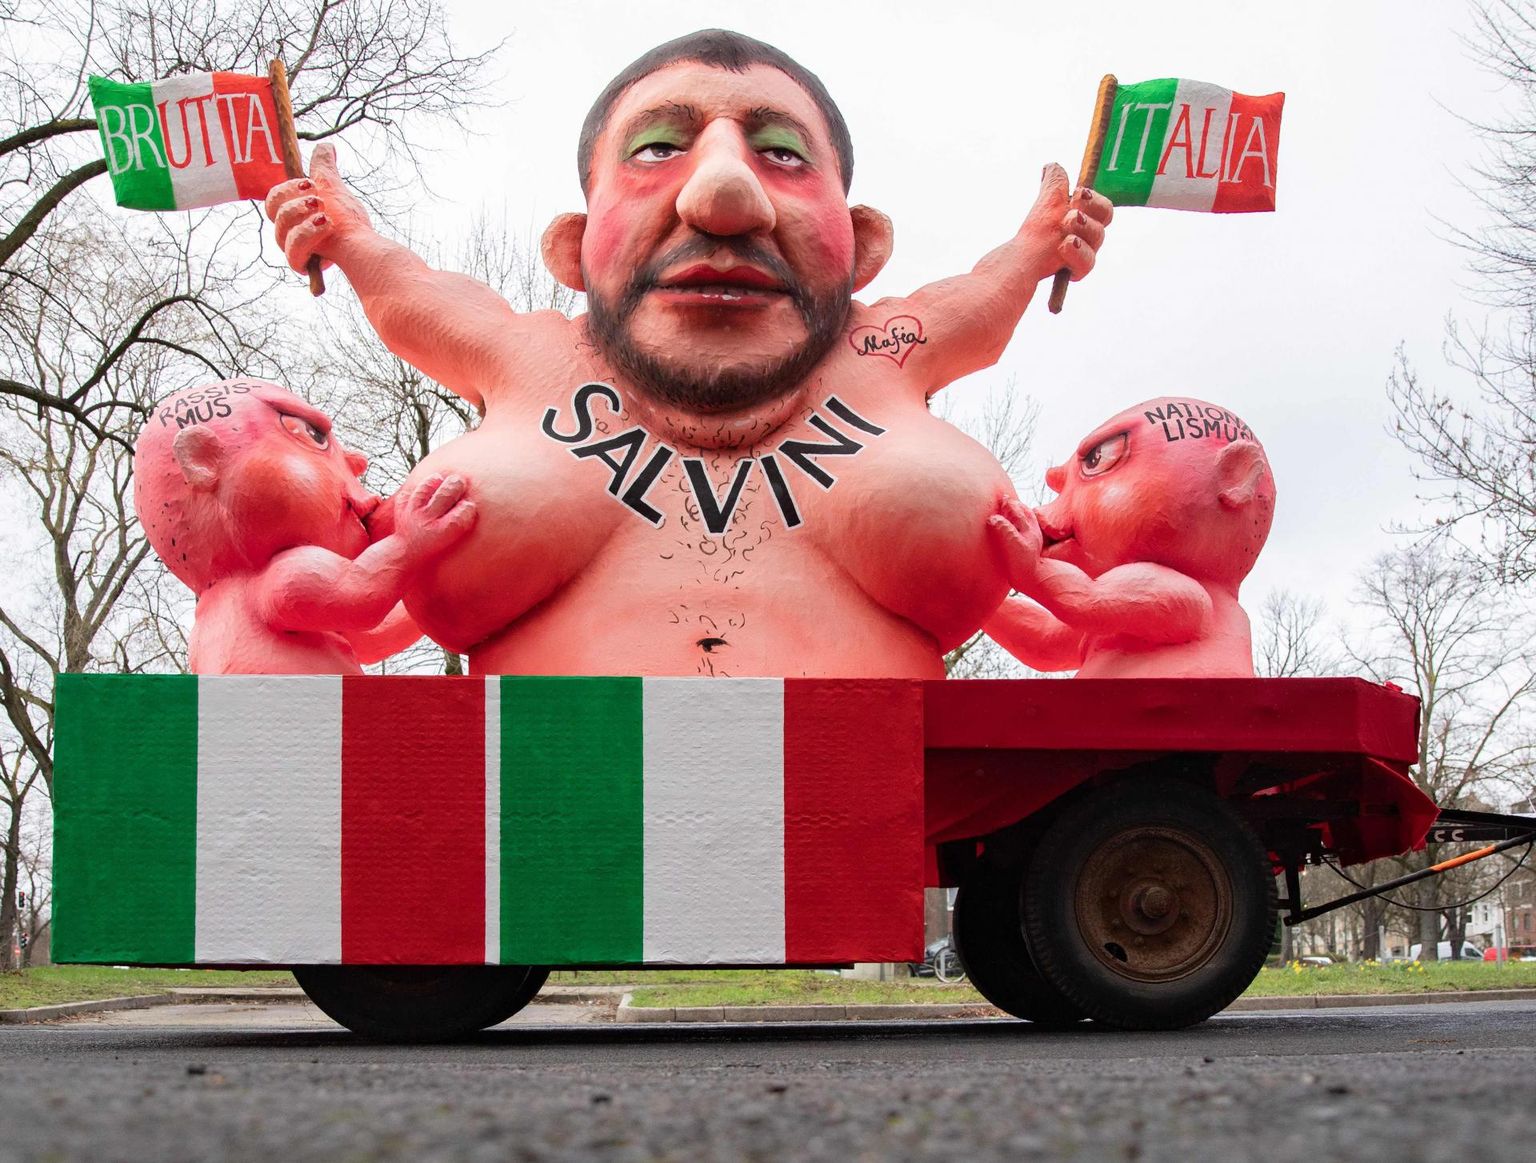 Itaalia poliitikut Matteo Salvinit kujutav skulptuur Düsseldorfis. Salvini hoiab käes Itaalia lippe, millele on kirjutatud «Kole Itaalia» ning imetab lapsi, kes kehastavad rassismi ja natsionalismi.